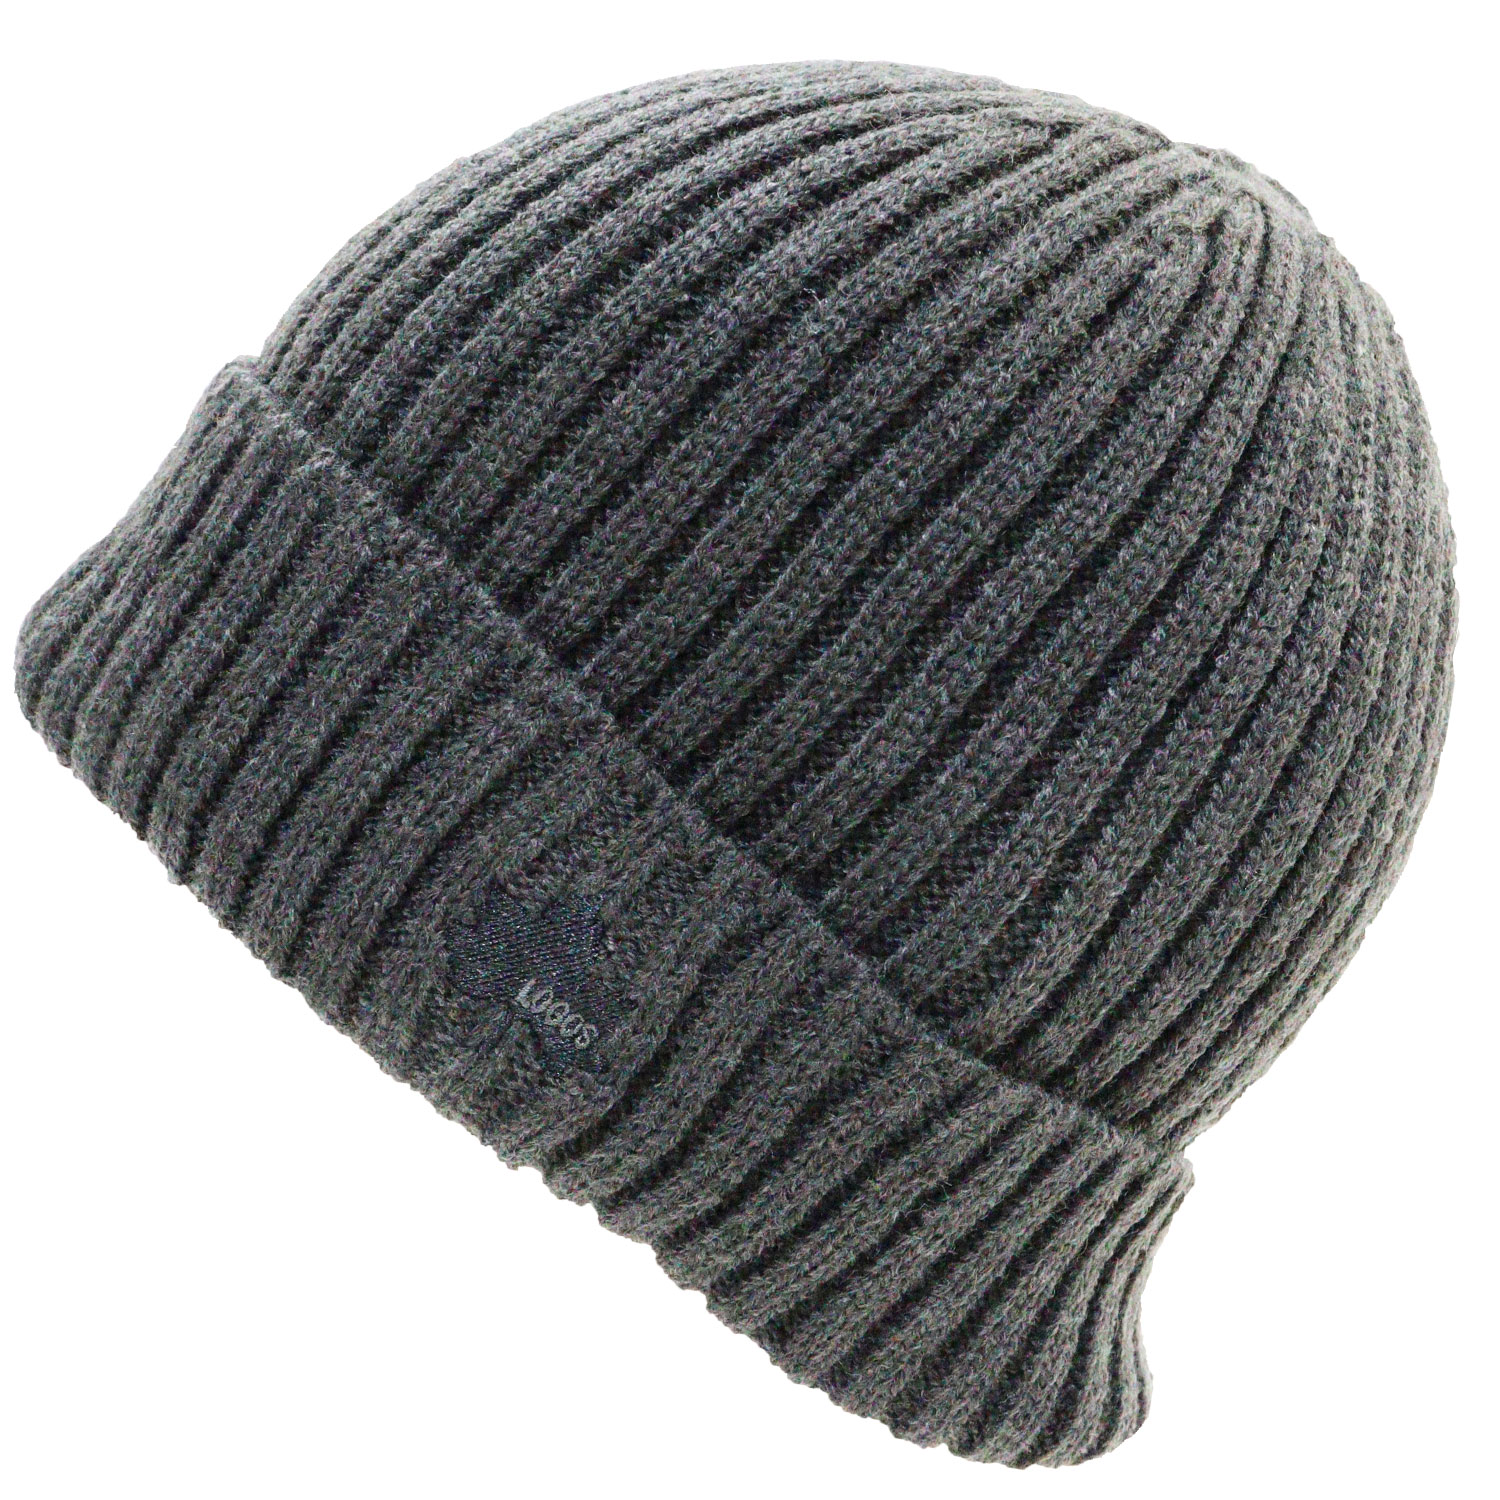 ロゴス ニット帽 ロゴ刺繍 無地 リブ編み ネコポス対応 全国送料無料 LOGOS ニットワッチ